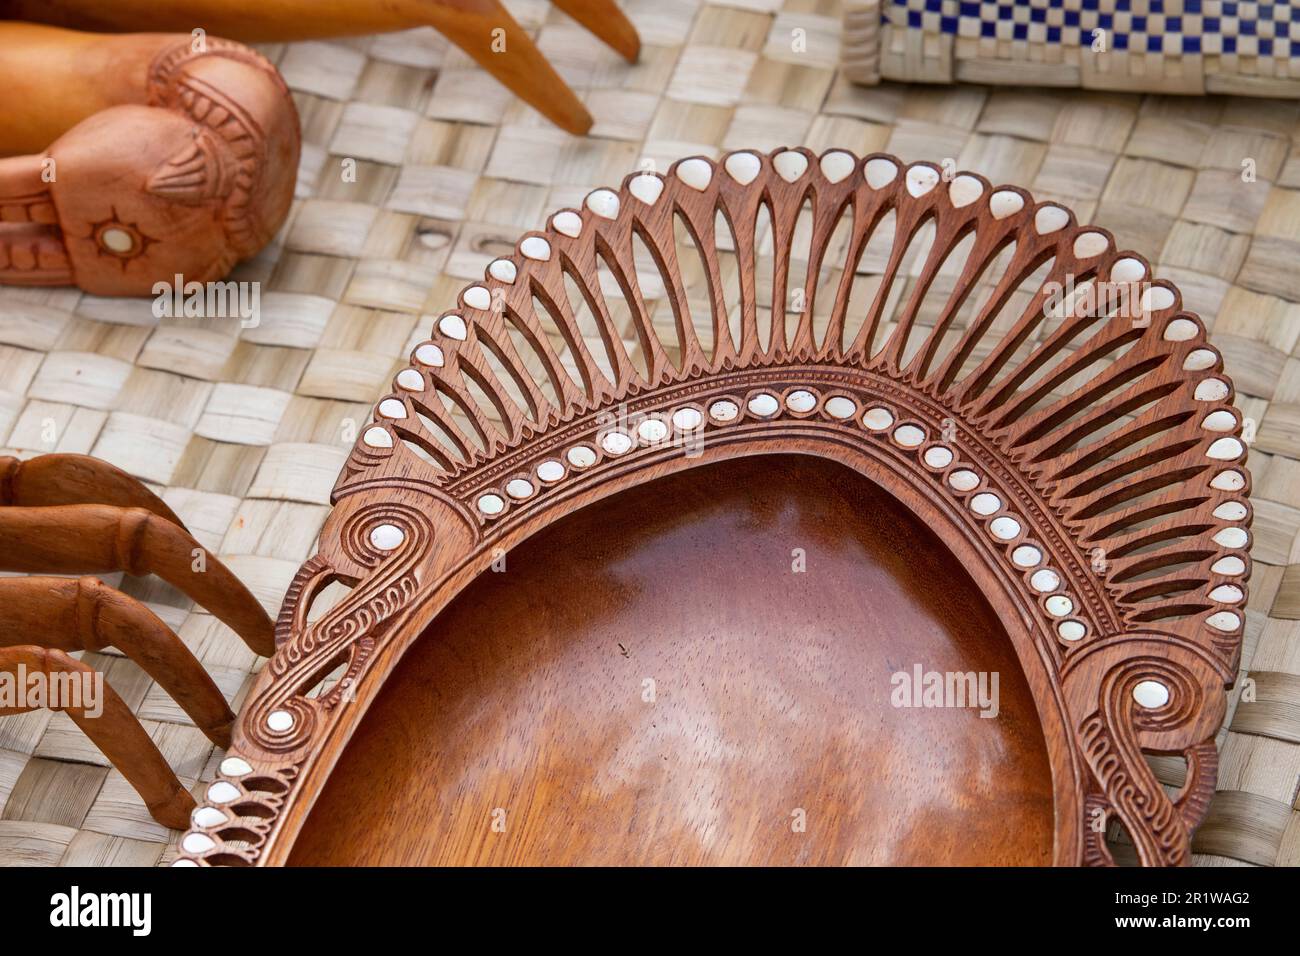 Papouasie-Nouvelle-Guinée, îles Trobriand, province de Milne Bay, île Kuiawa alias Kuyau. Bol traditionnel en bois sculpté à la main avec incrustation en coquillages. Banque D'Images